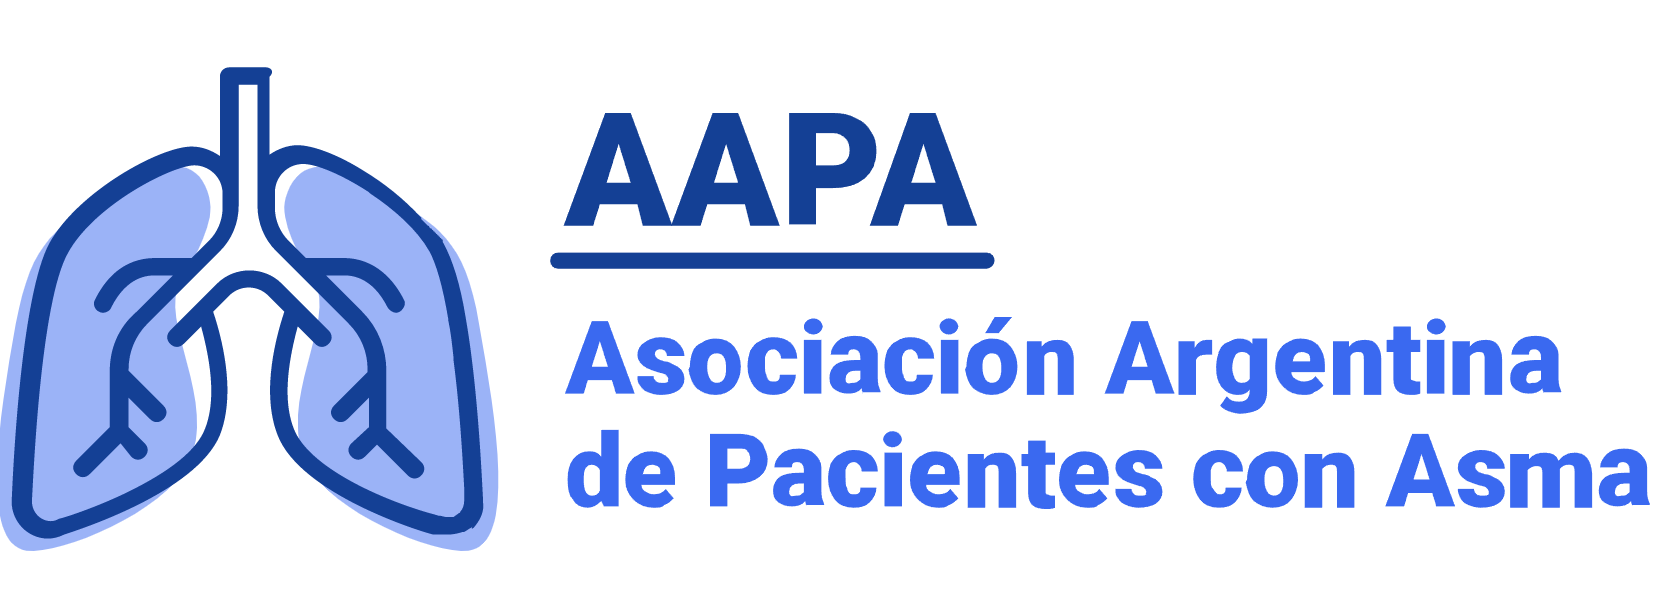 AAPA logo.png